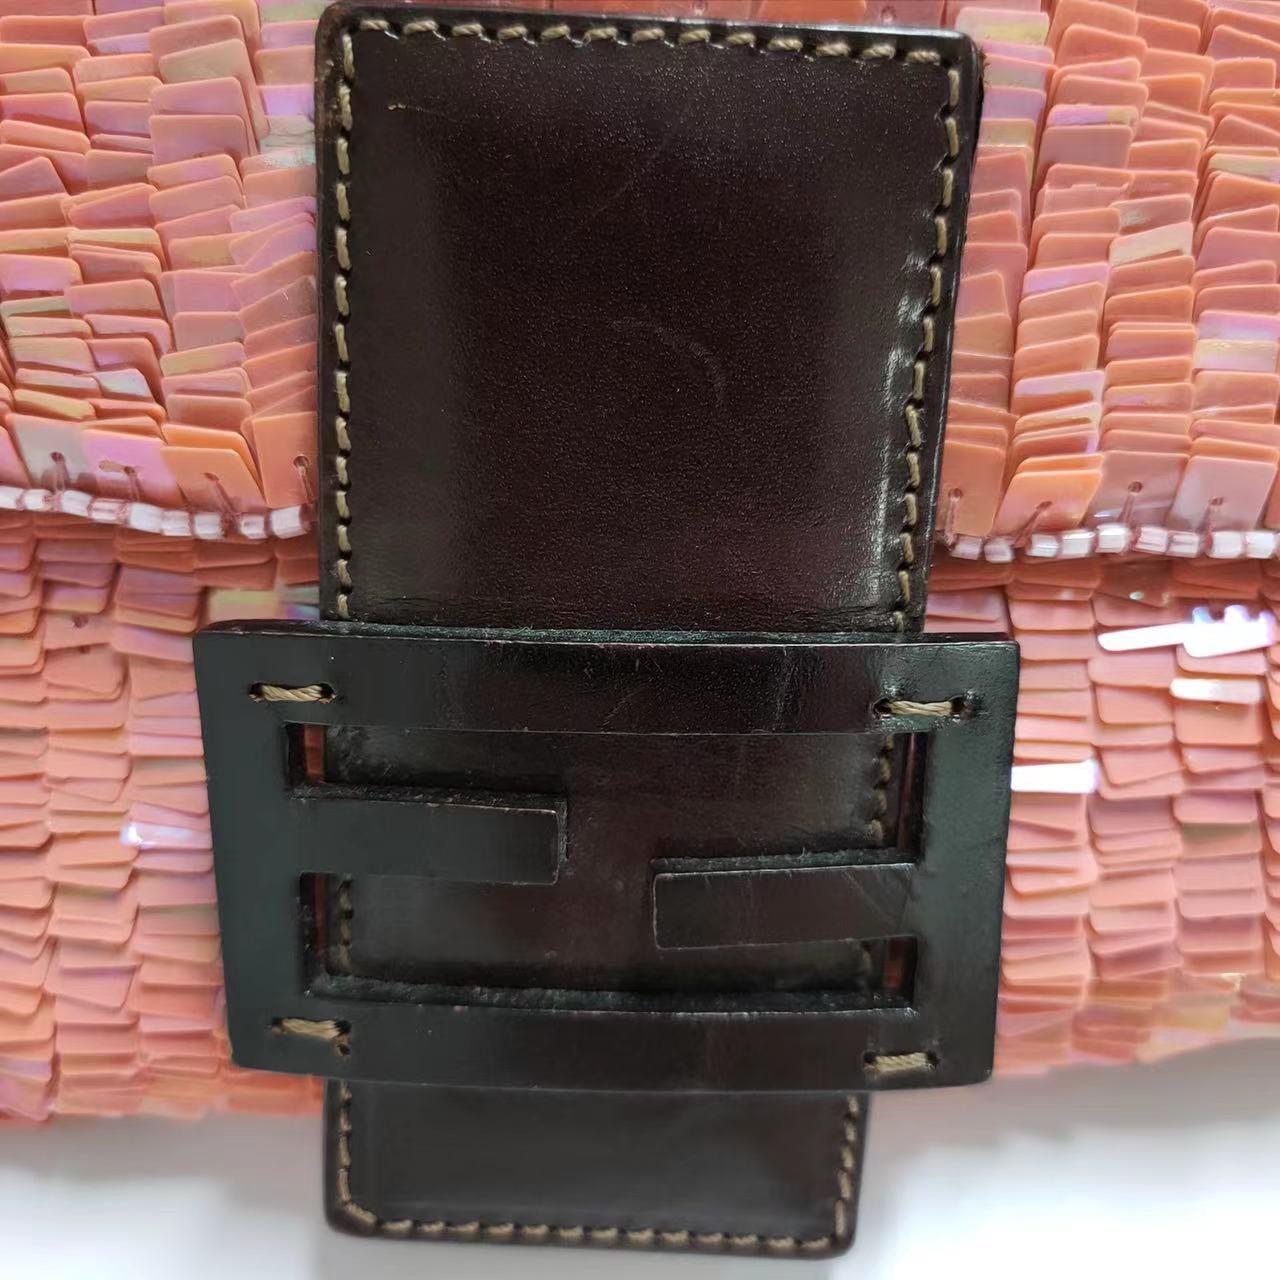 Fendi Baguette Pink Sequins Shoulder Bag 8